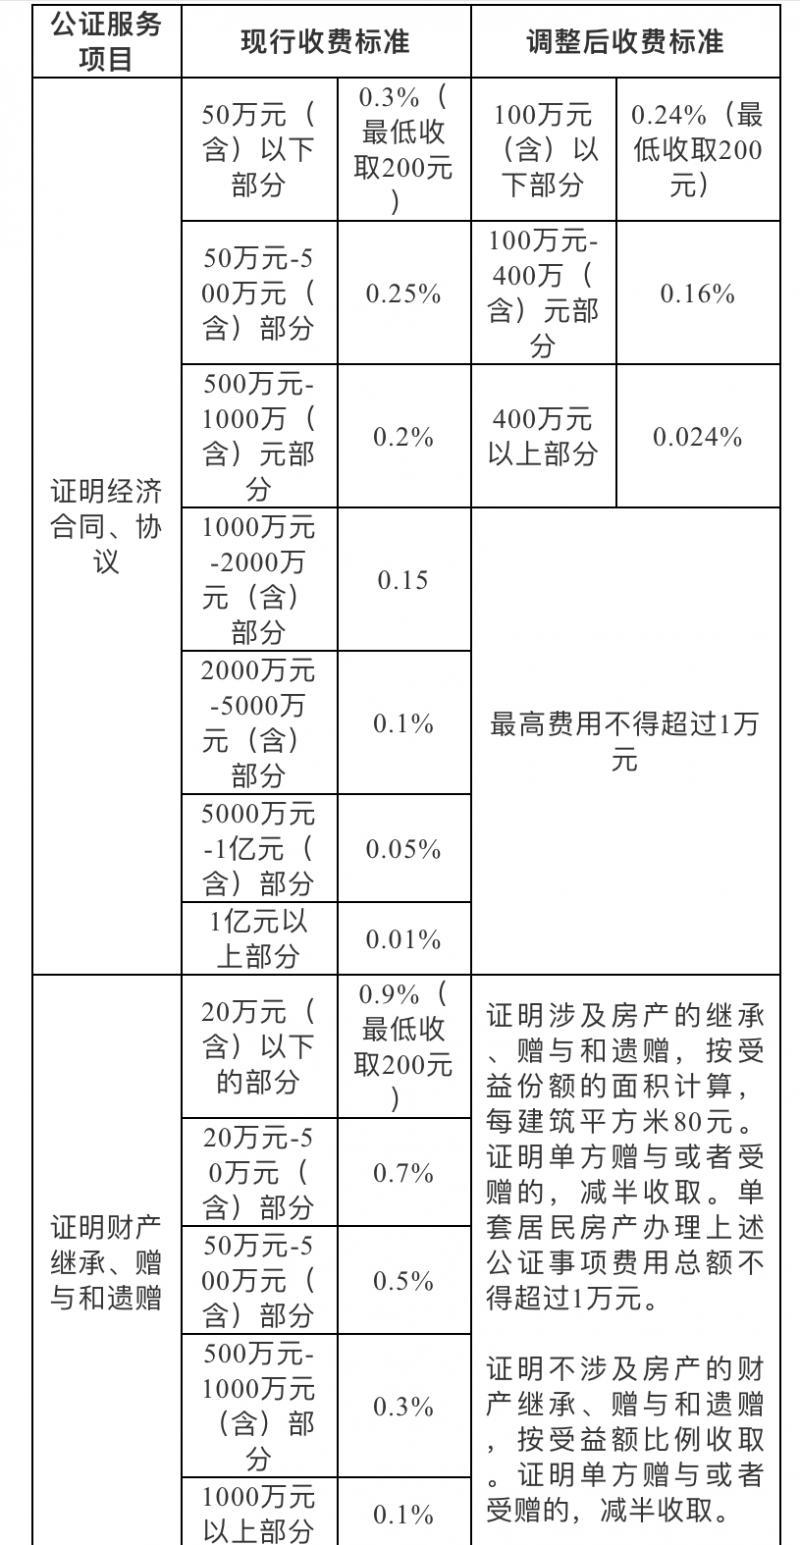 北京下调2项公证服务收费标准 涉及房产继承等